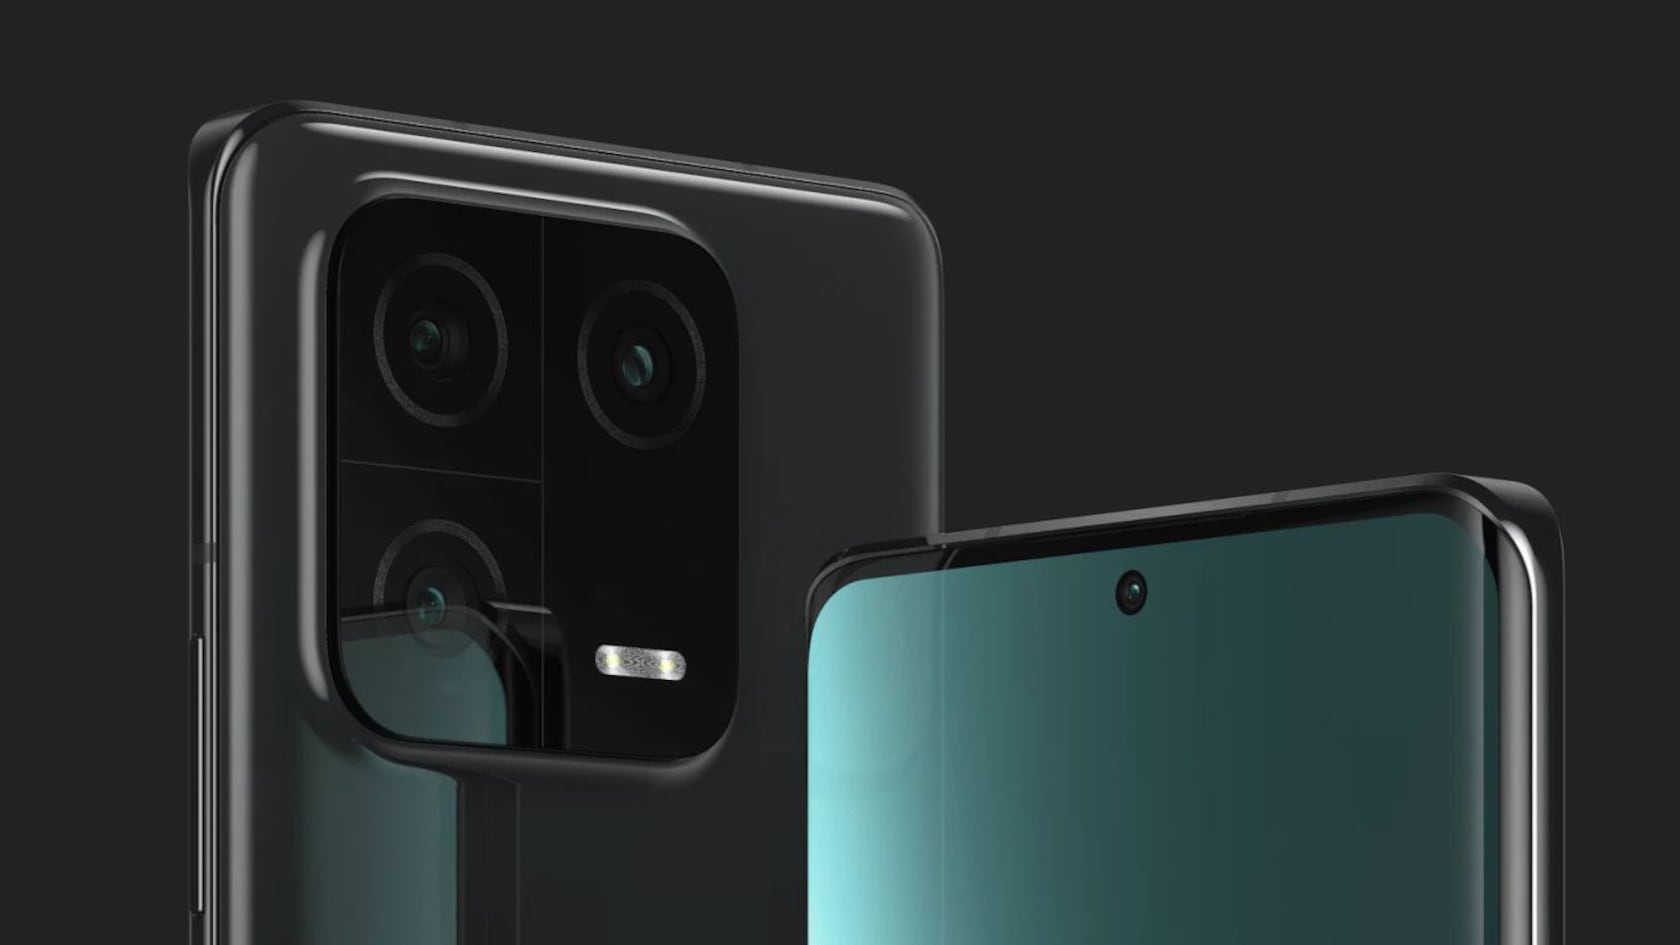 Leica se reafirma como socio fotográfico del fabricante chino y muestran las fotos que se pueden lograr con el Xiaomi 13 y Xiaomi 13 Pro.